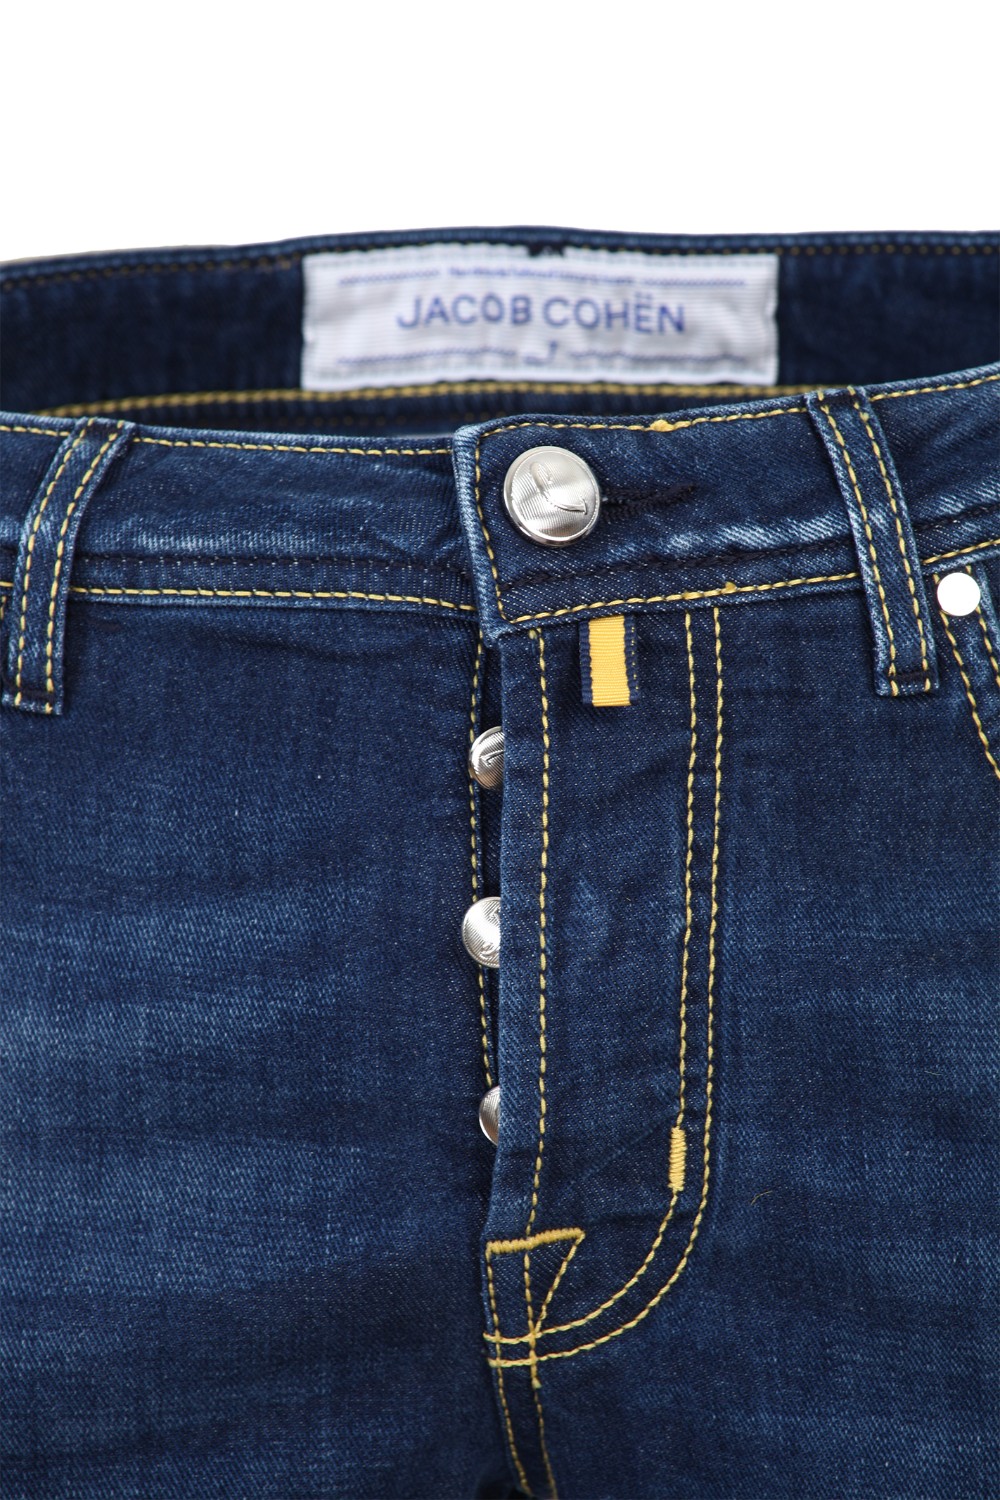 shop JACOB COHEN Saldi Jeans: Jacob Cohen jeans in misto cotone con finiture di colore giallo.
Modello slim cinque tasche.
Chiusura con zip e bottone.
Lunghezza alla caviglia.
Vestibilità slim.
Composizione: 92% cotone 6% poliestere 2% elastan.
Made in Italy.. J688 COMF 00919 W1-001 number 5992833